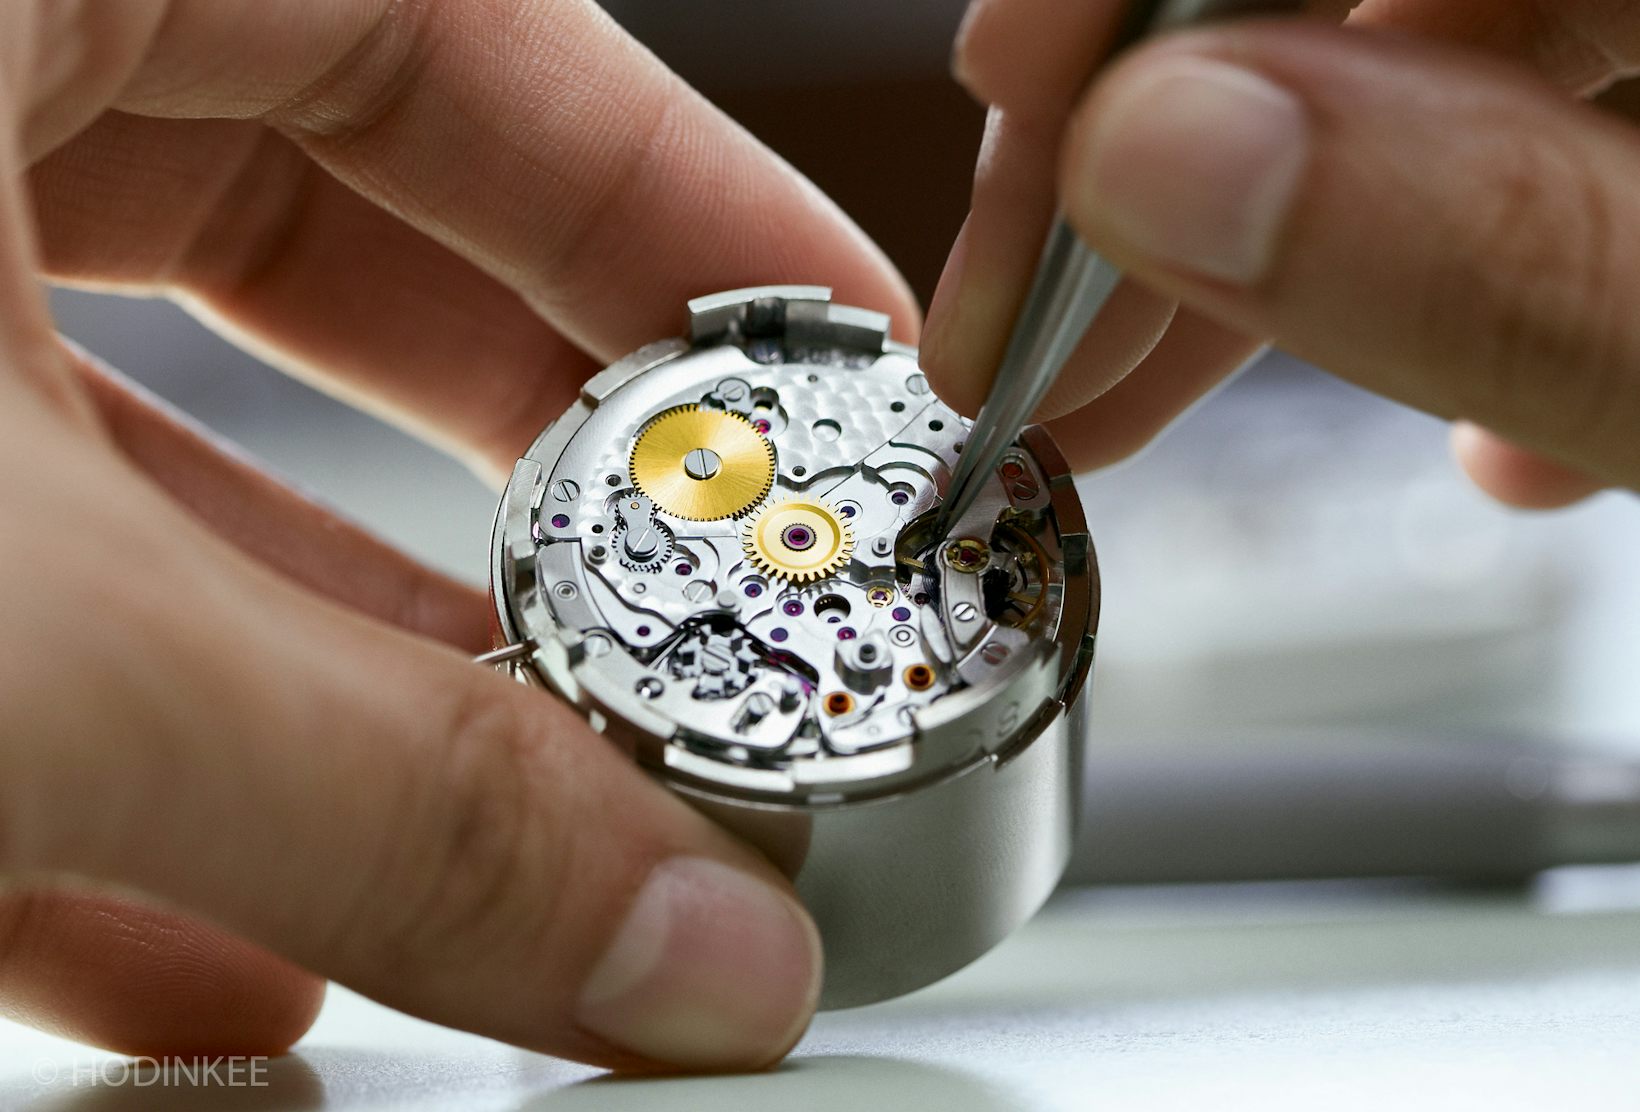 Починить наручные часы. Завод Rolex. Завод ролекс в Швейцарии. Đồng hồ Rolex. Rolex watch Repair.